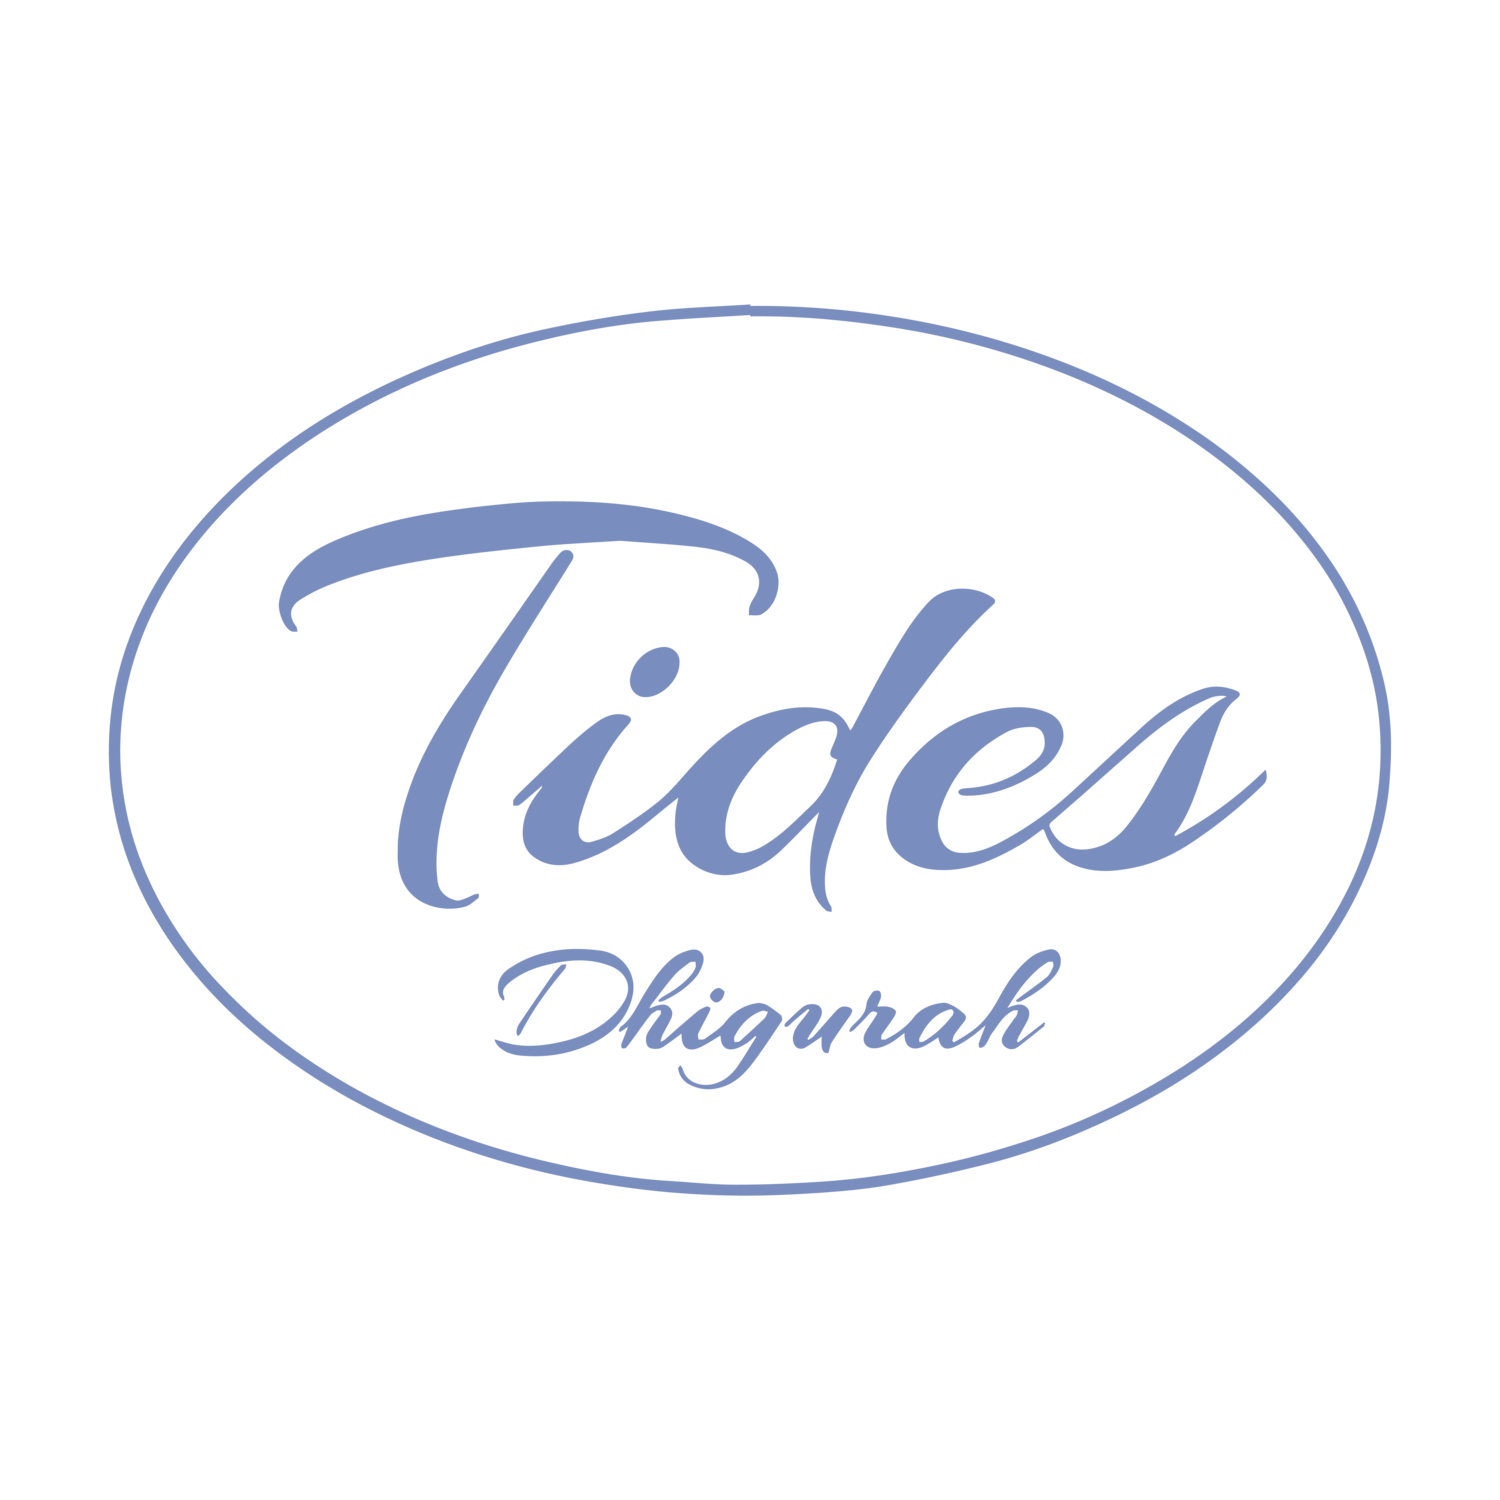 TIDES DHIGURAH